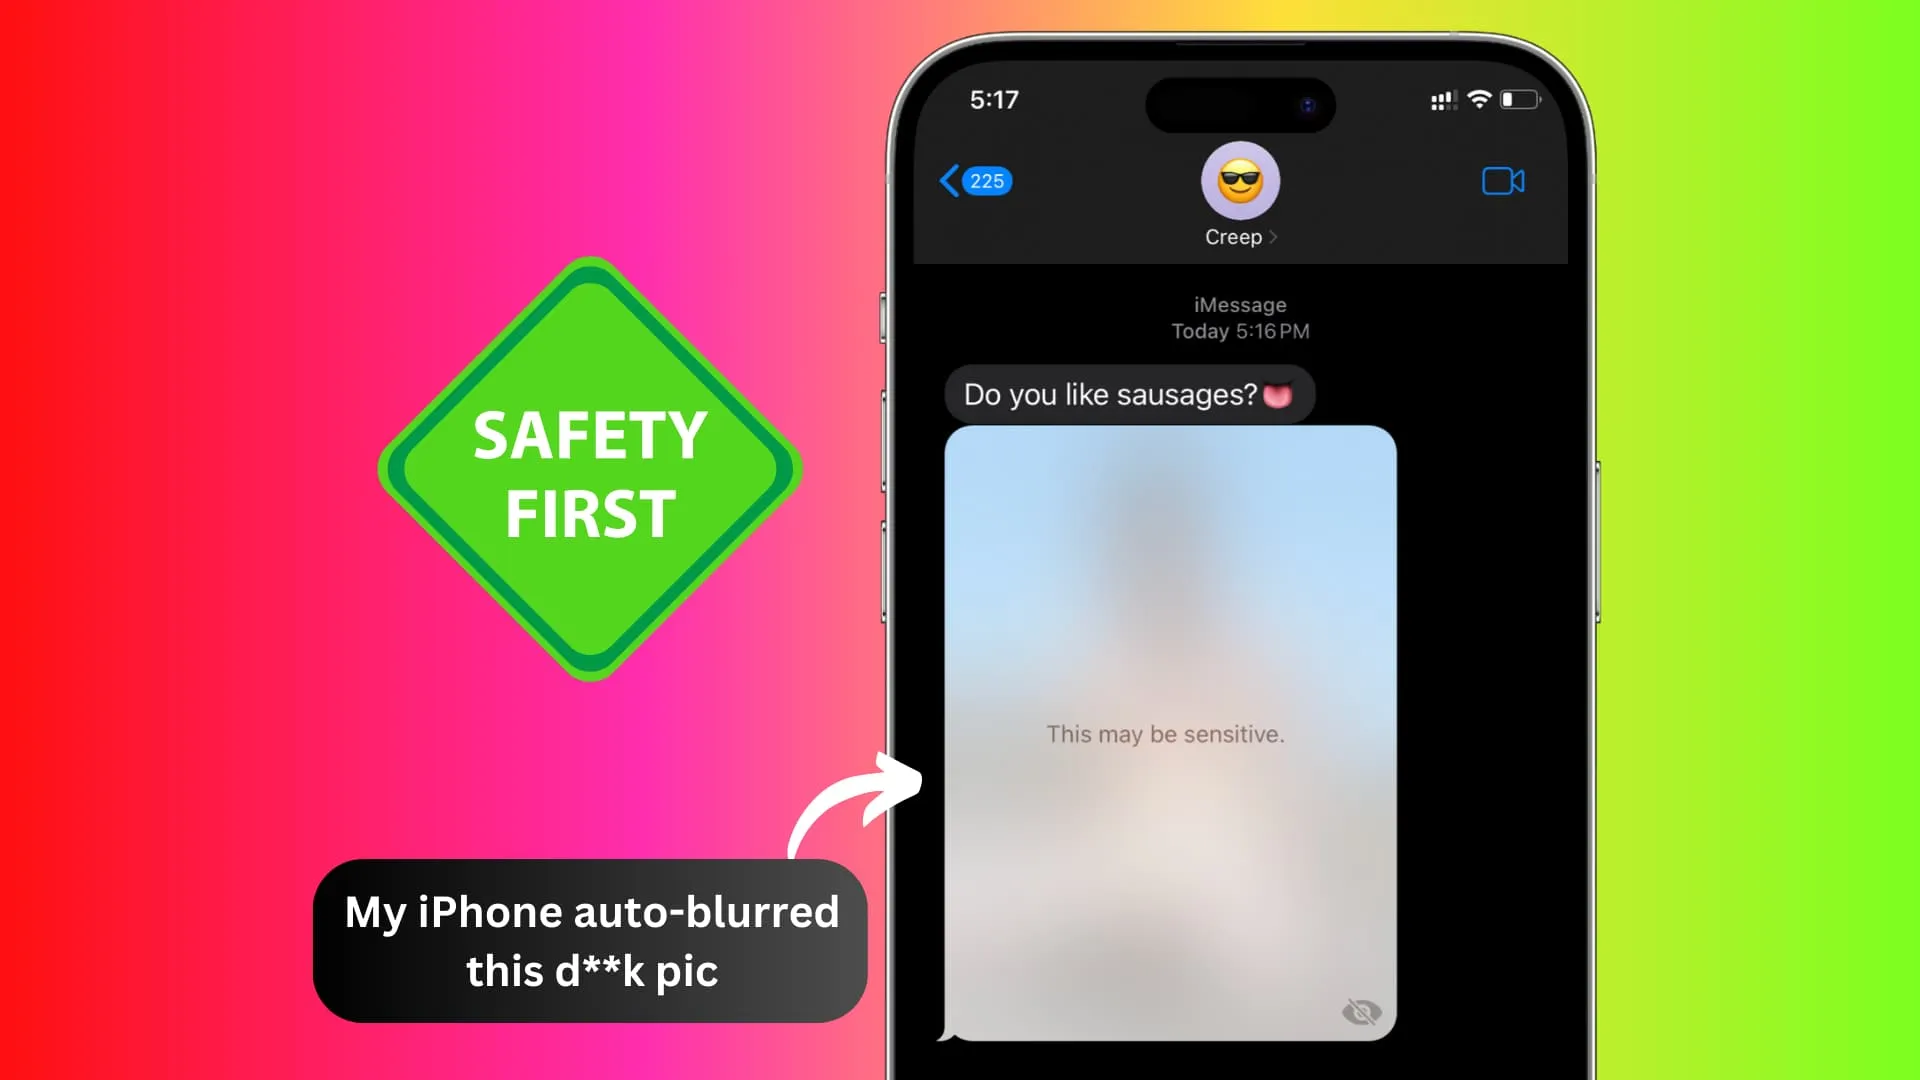 Unaufgefordertes Nacktbild in iPhone-Nachrichten aufgrund der Kommunikationssicherheits- und Warnfunktion für sensible Inhalte von Apple unscharf